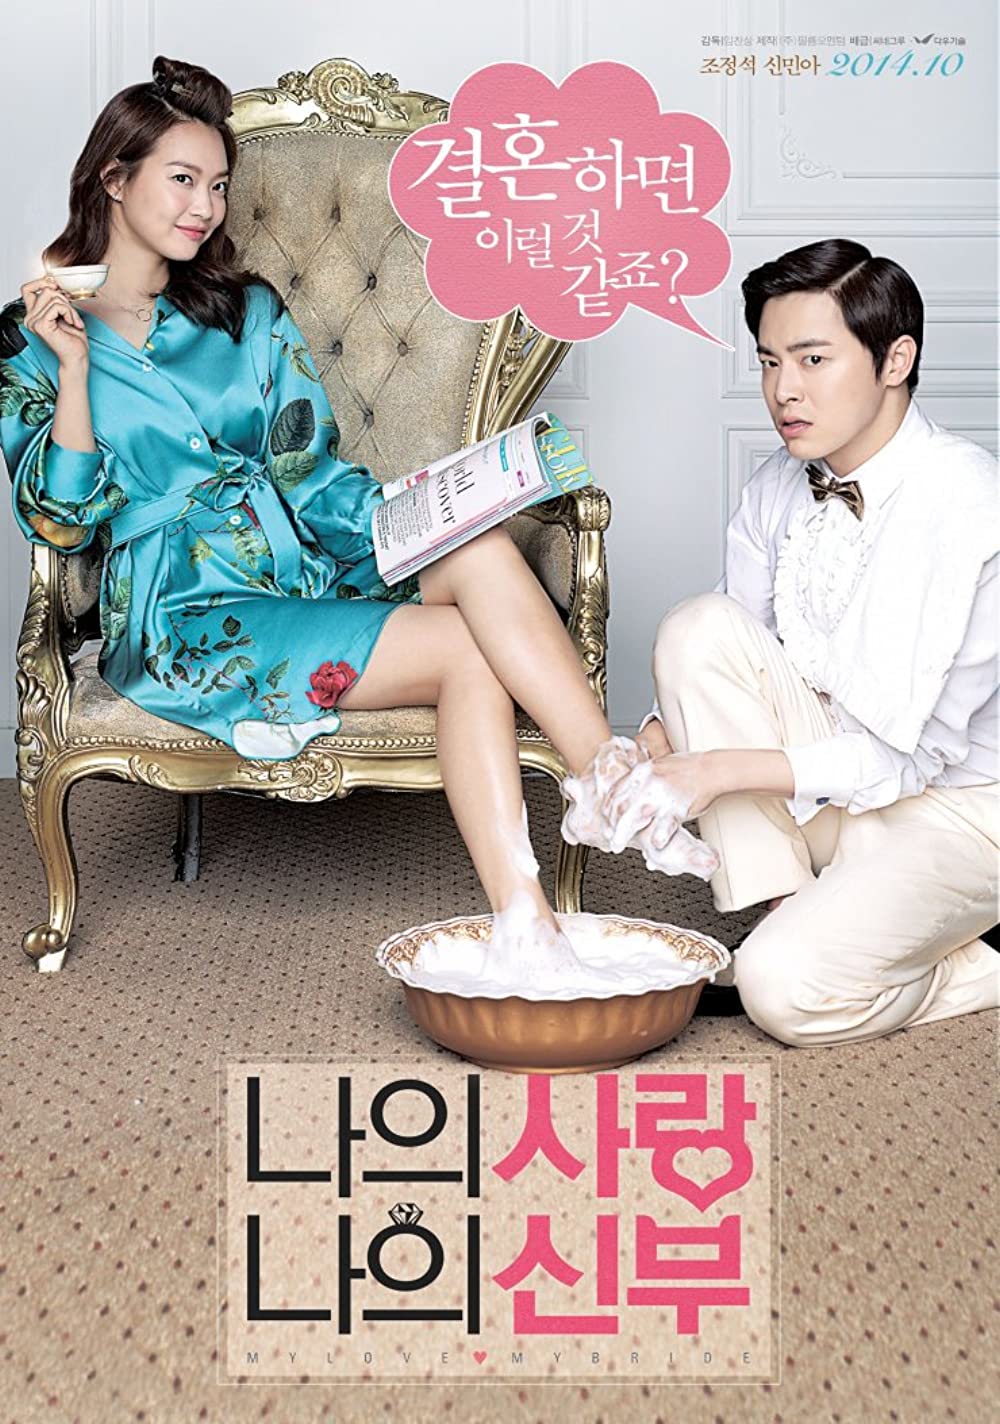 11 Film Korea komedi romantis, kencan kontrak di Love and Leashes